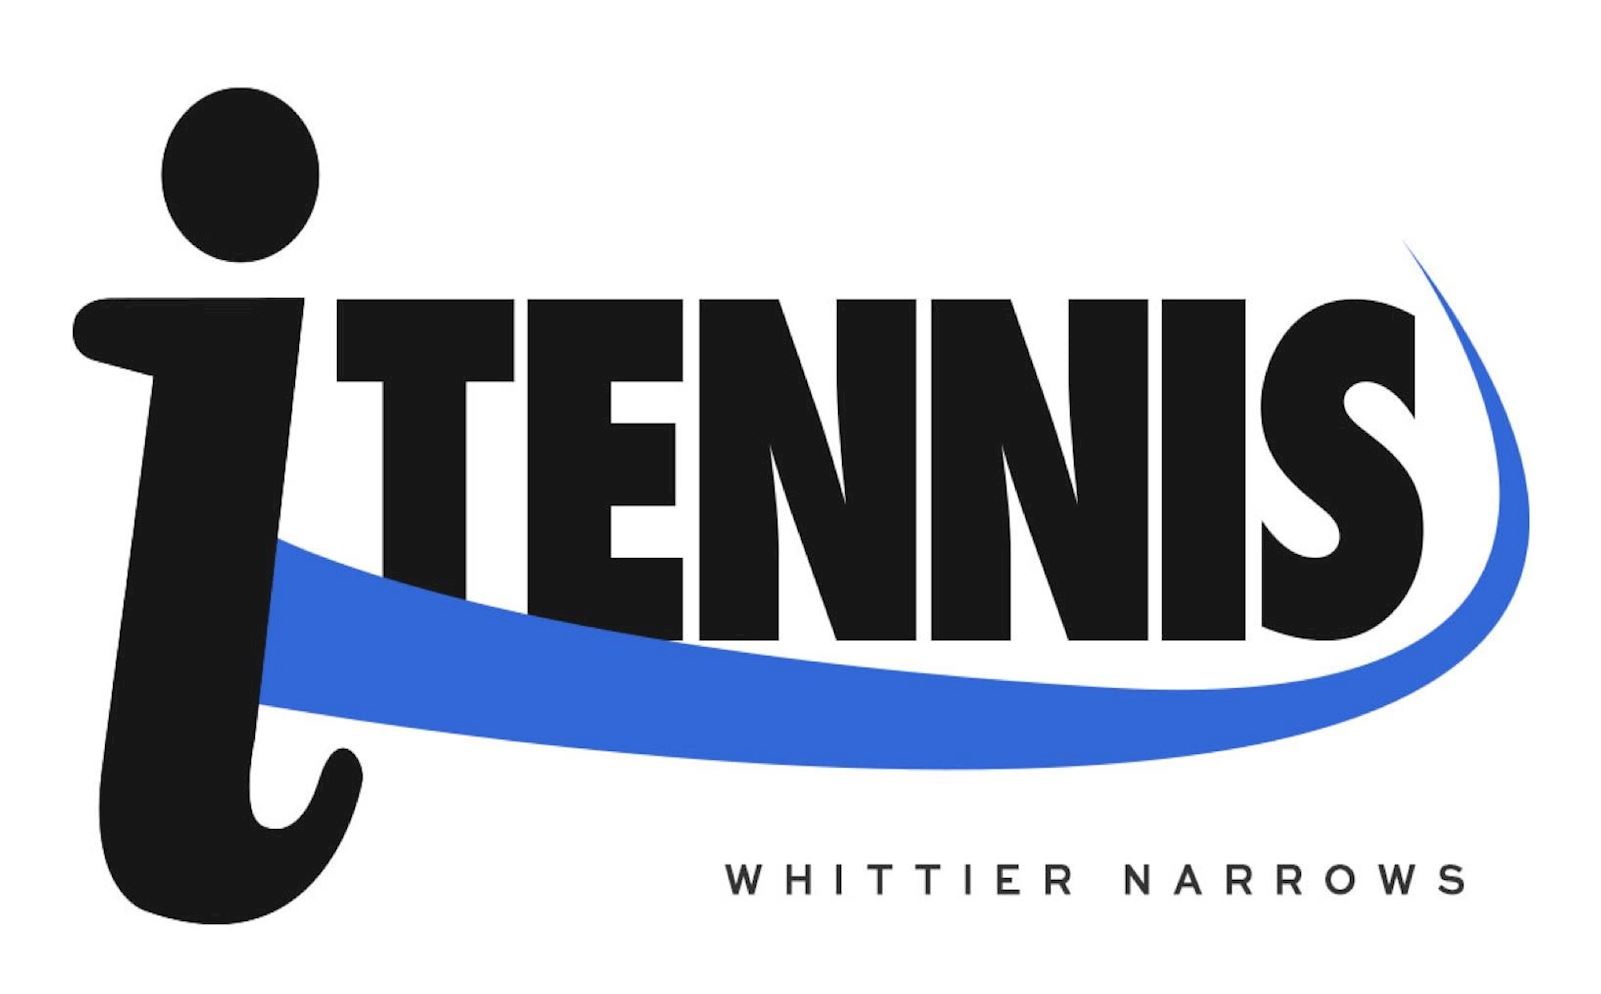 USTA Junior Circuit, Junior Tennis